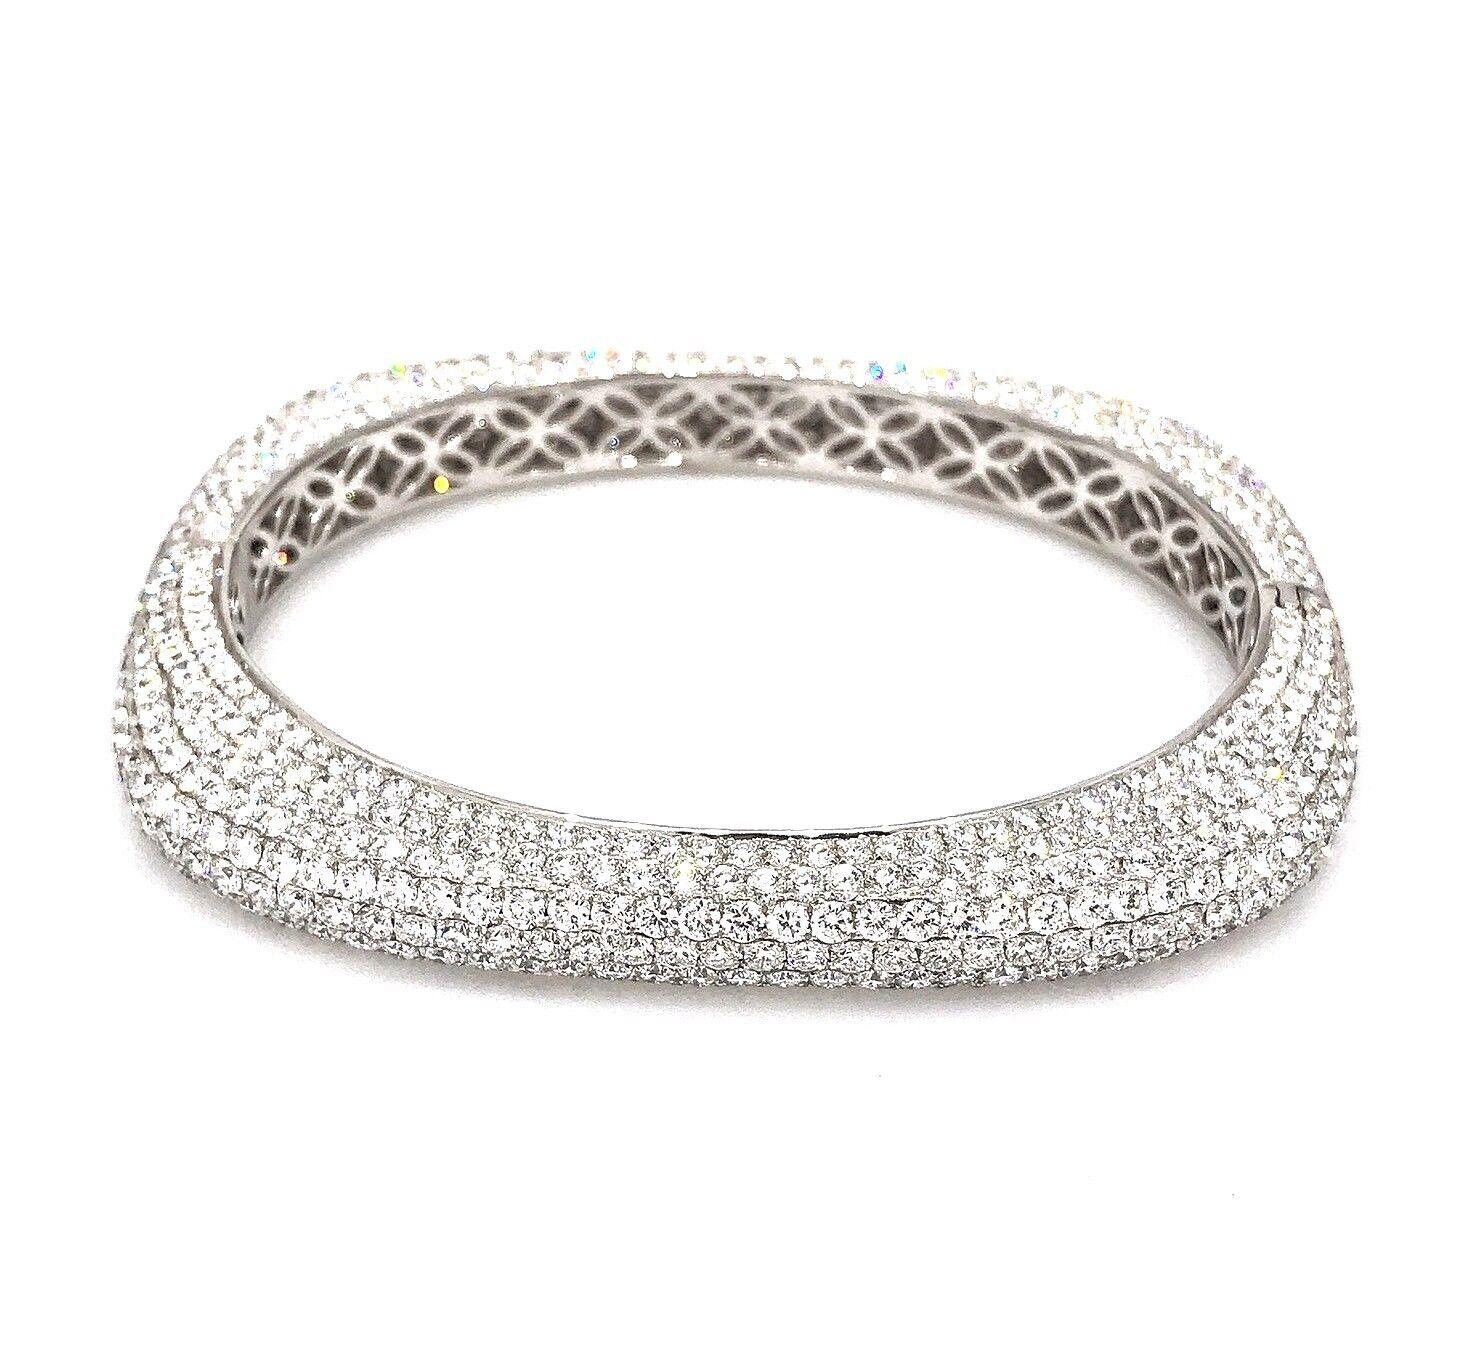 Bracelet en or blanc 18k avec pavé de diamants carrés arrondis

Le bracelet de forme carrée arrondie est orné de 22,59 carats de diamants ronds, brillants et de taille normale, sertis en pavé sur l'ensemble du bracelet, avec une ouverture ovale. Le